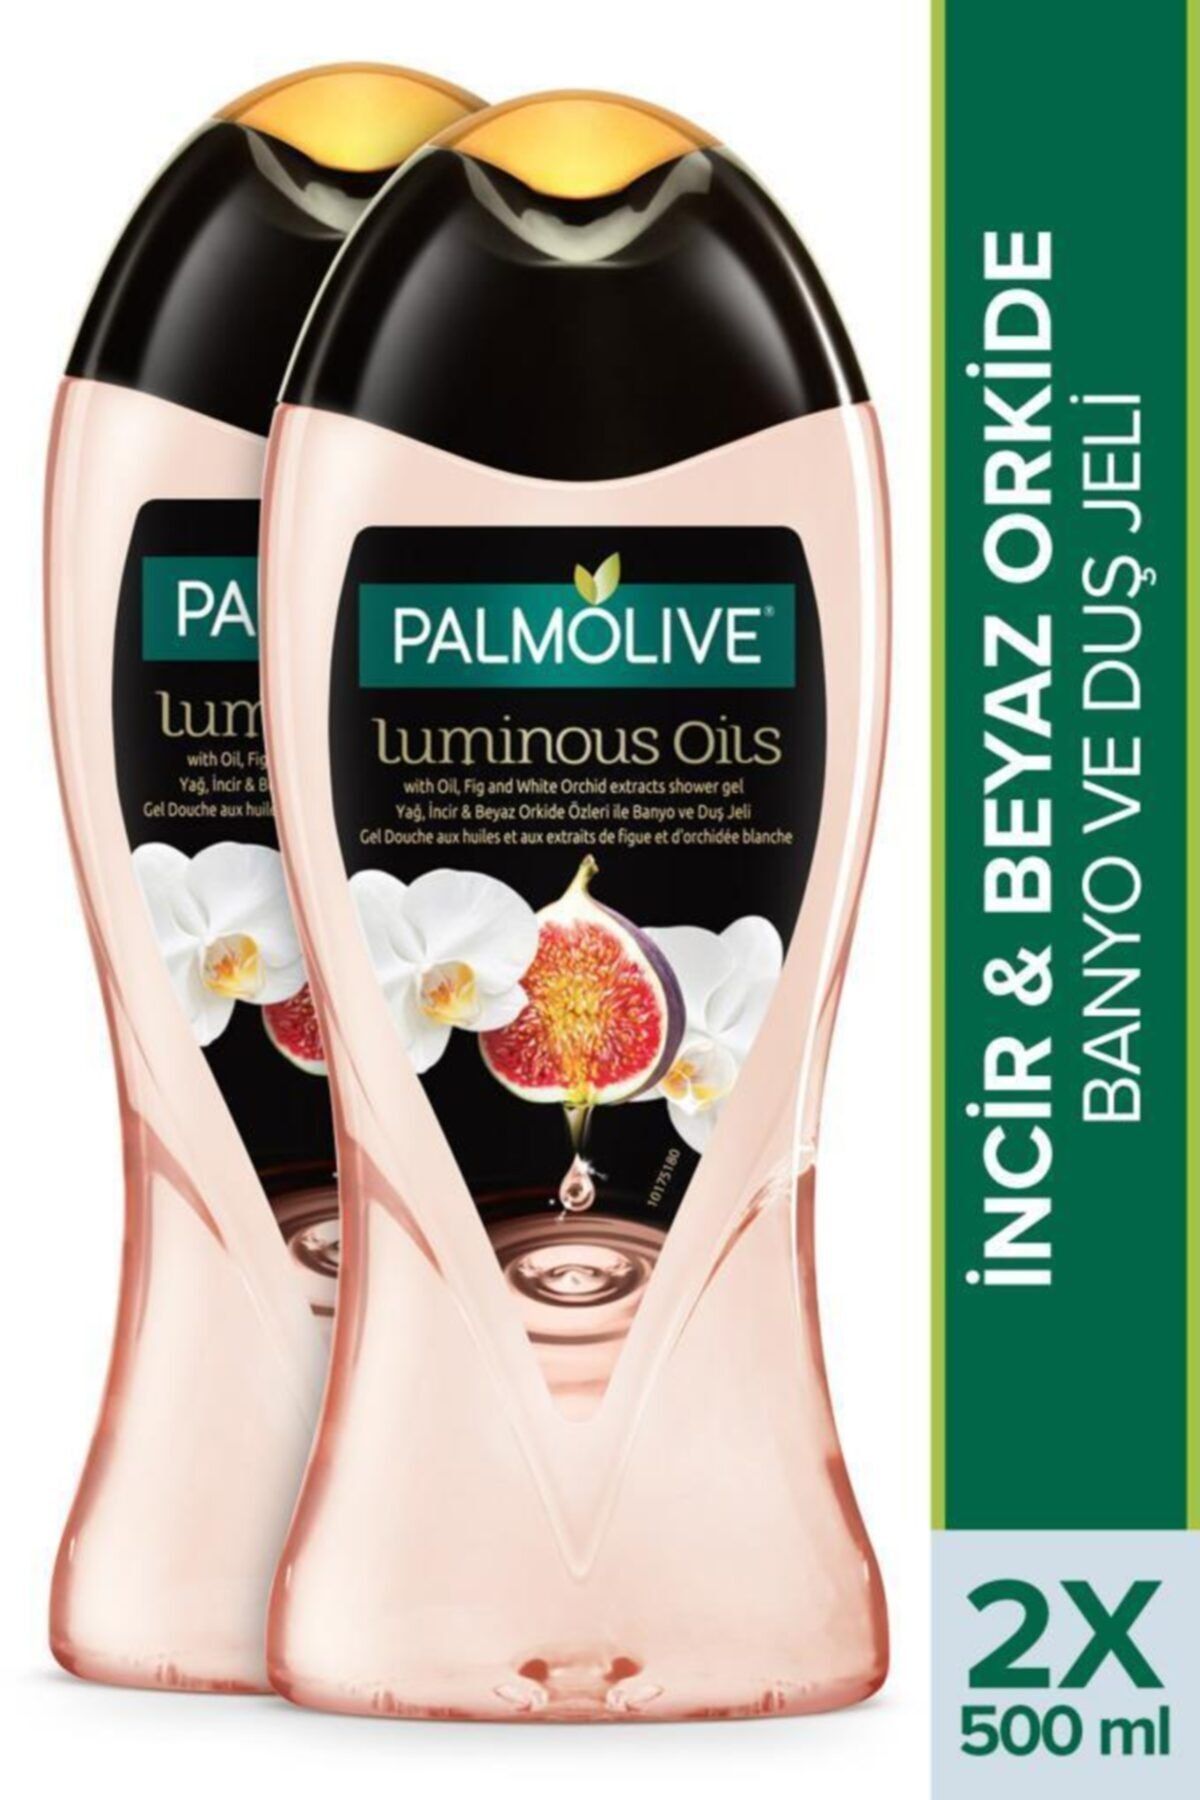 Palmolive Luminous Oils İncir & Beyaz Orkide Özleri Banyo Ve Duş Jeli 2x 500 ml